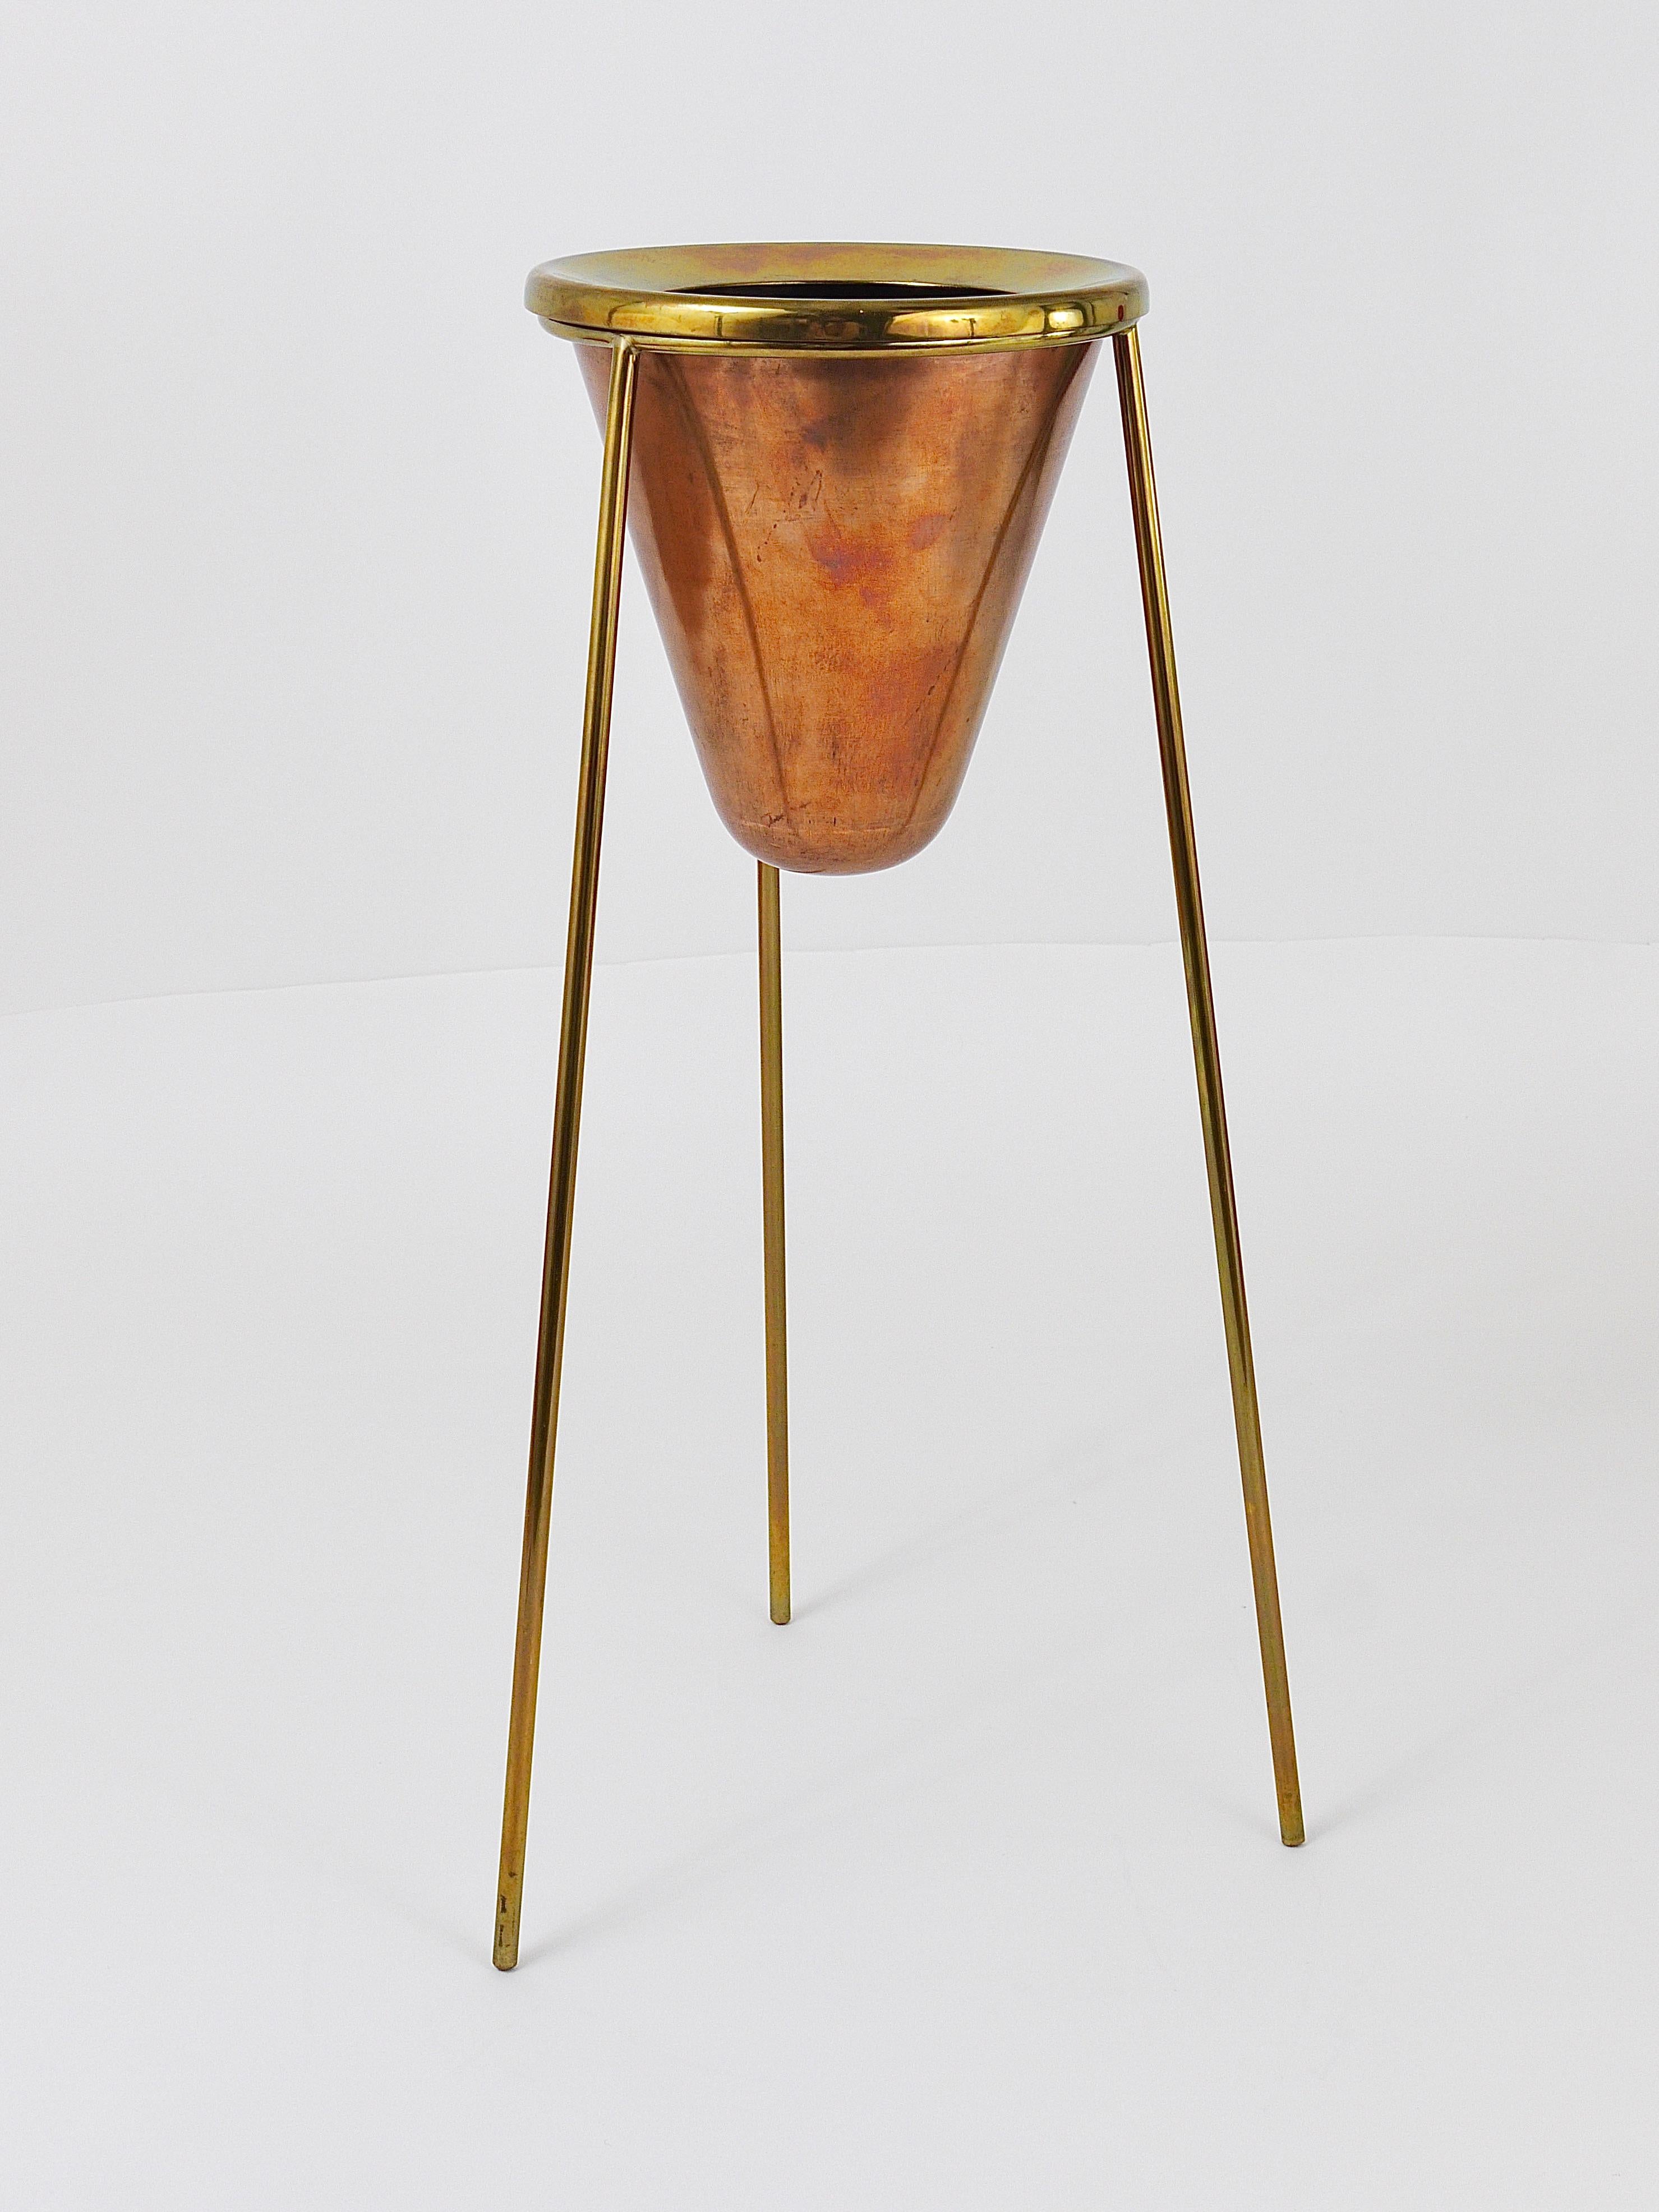 Rare Carl Aubock Copper & Brass Tripod Floor Ashtray, Austria, 1950s For Sale 12